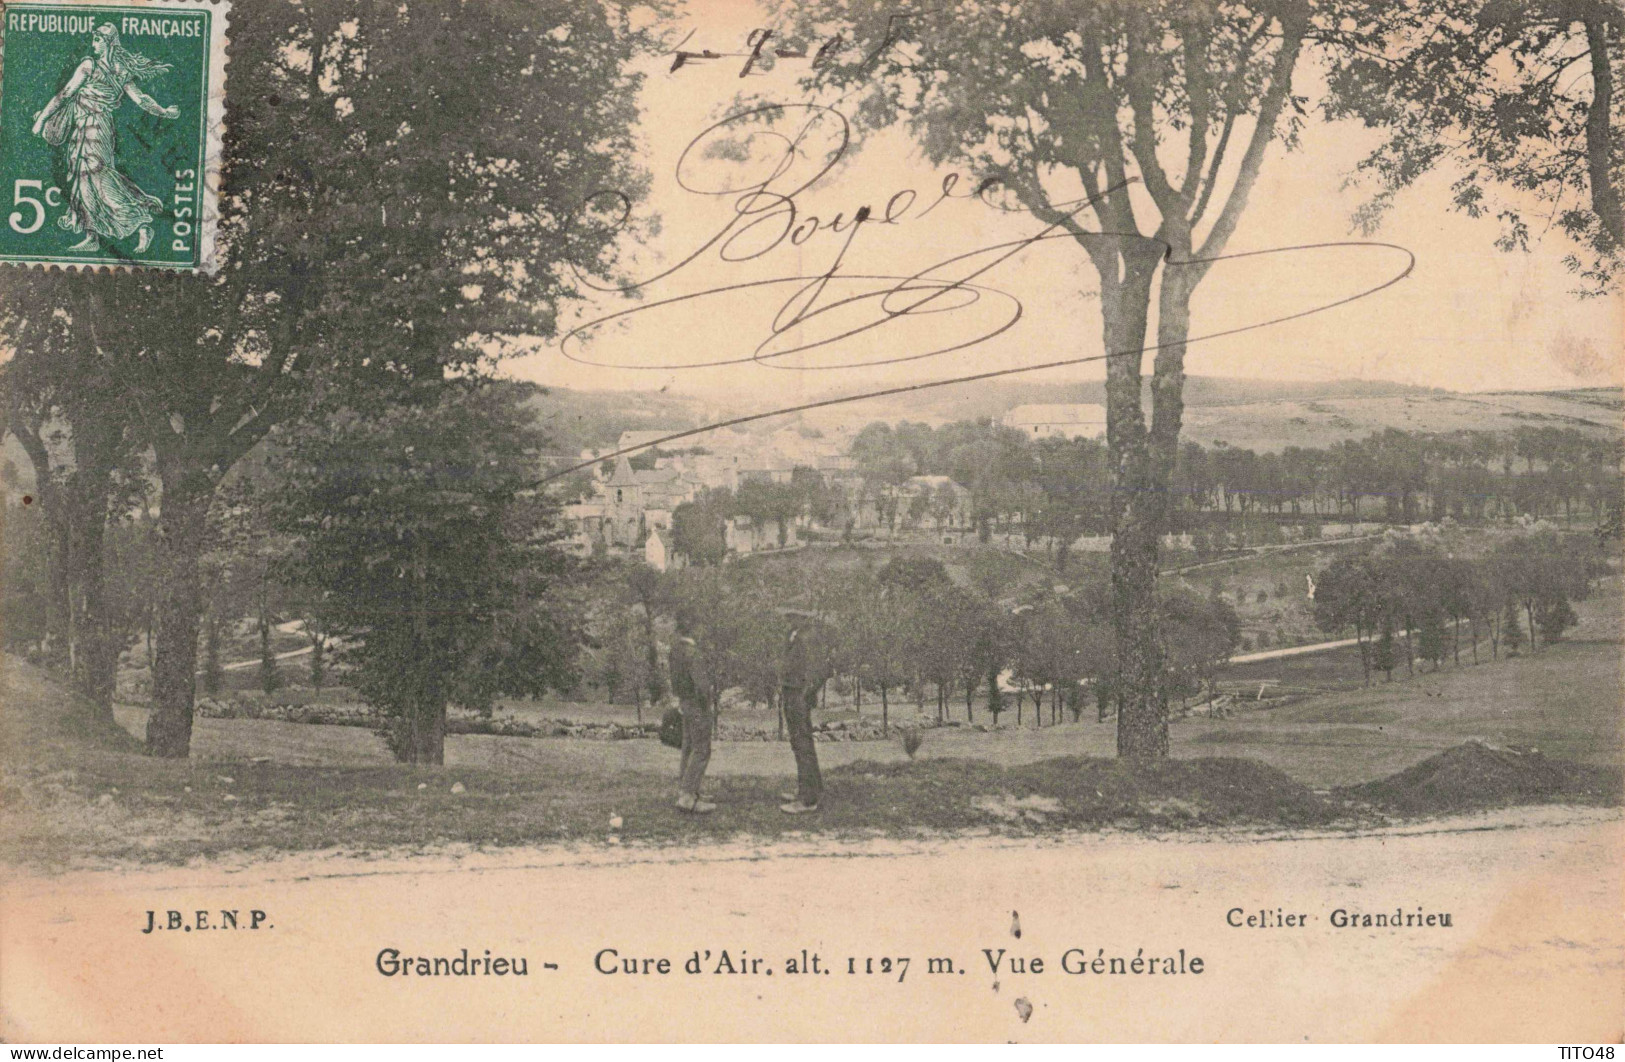 FR-48 LOZÈRE - GRANDRIEU - Cure D'Air. Alt 1127m - Vue Générale - Gandrieux Saint Amans